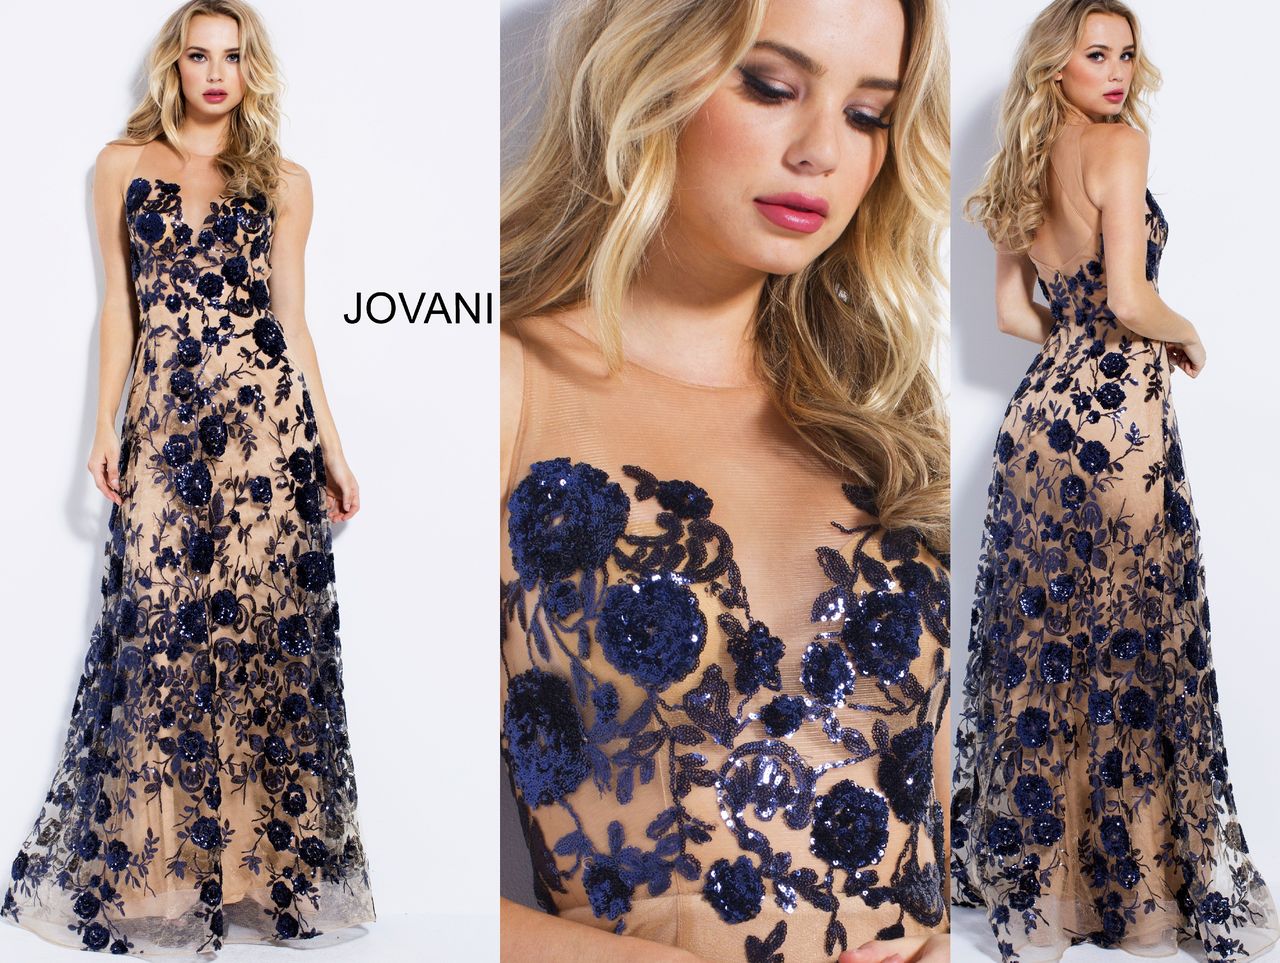 Шикарное новое вечернее платье Jovani 56046(США). В наличии в салоне Milana. Распродажа 390$ фото 3